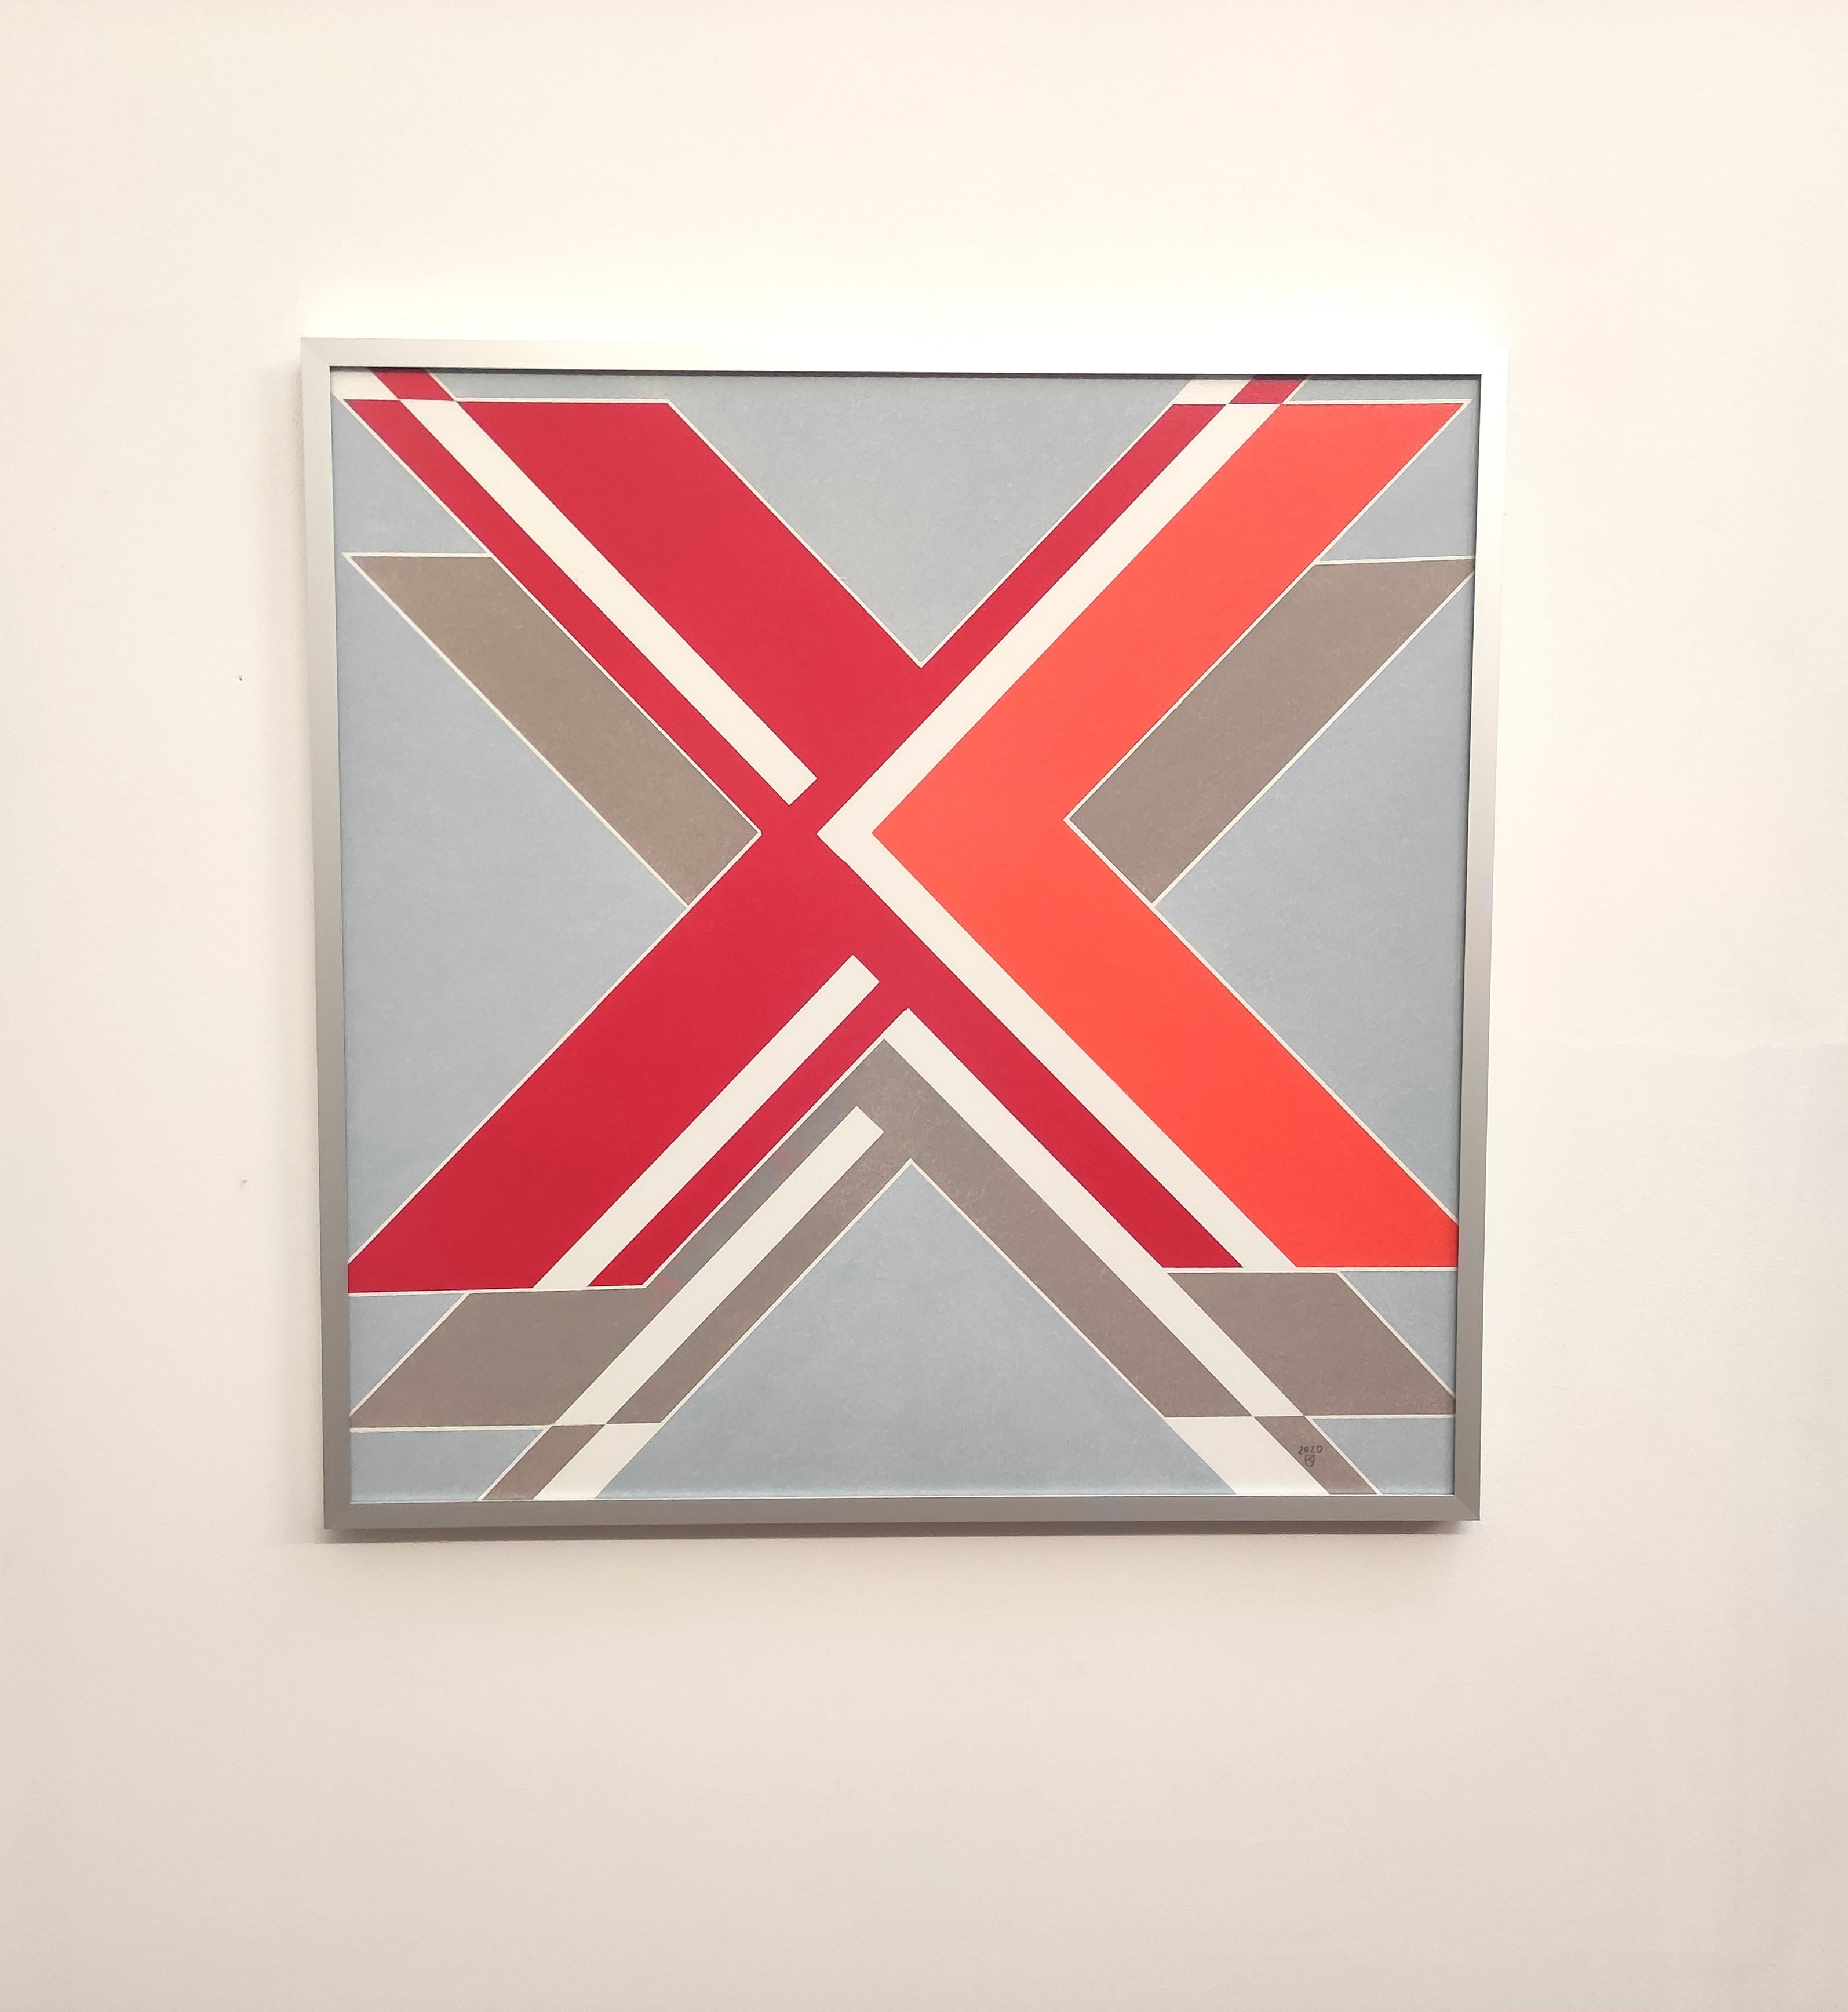  X  from The Message Series - Peinture abstraite contemporaine à l'huile au pastel, encadrée - Art de Janusz Kokot